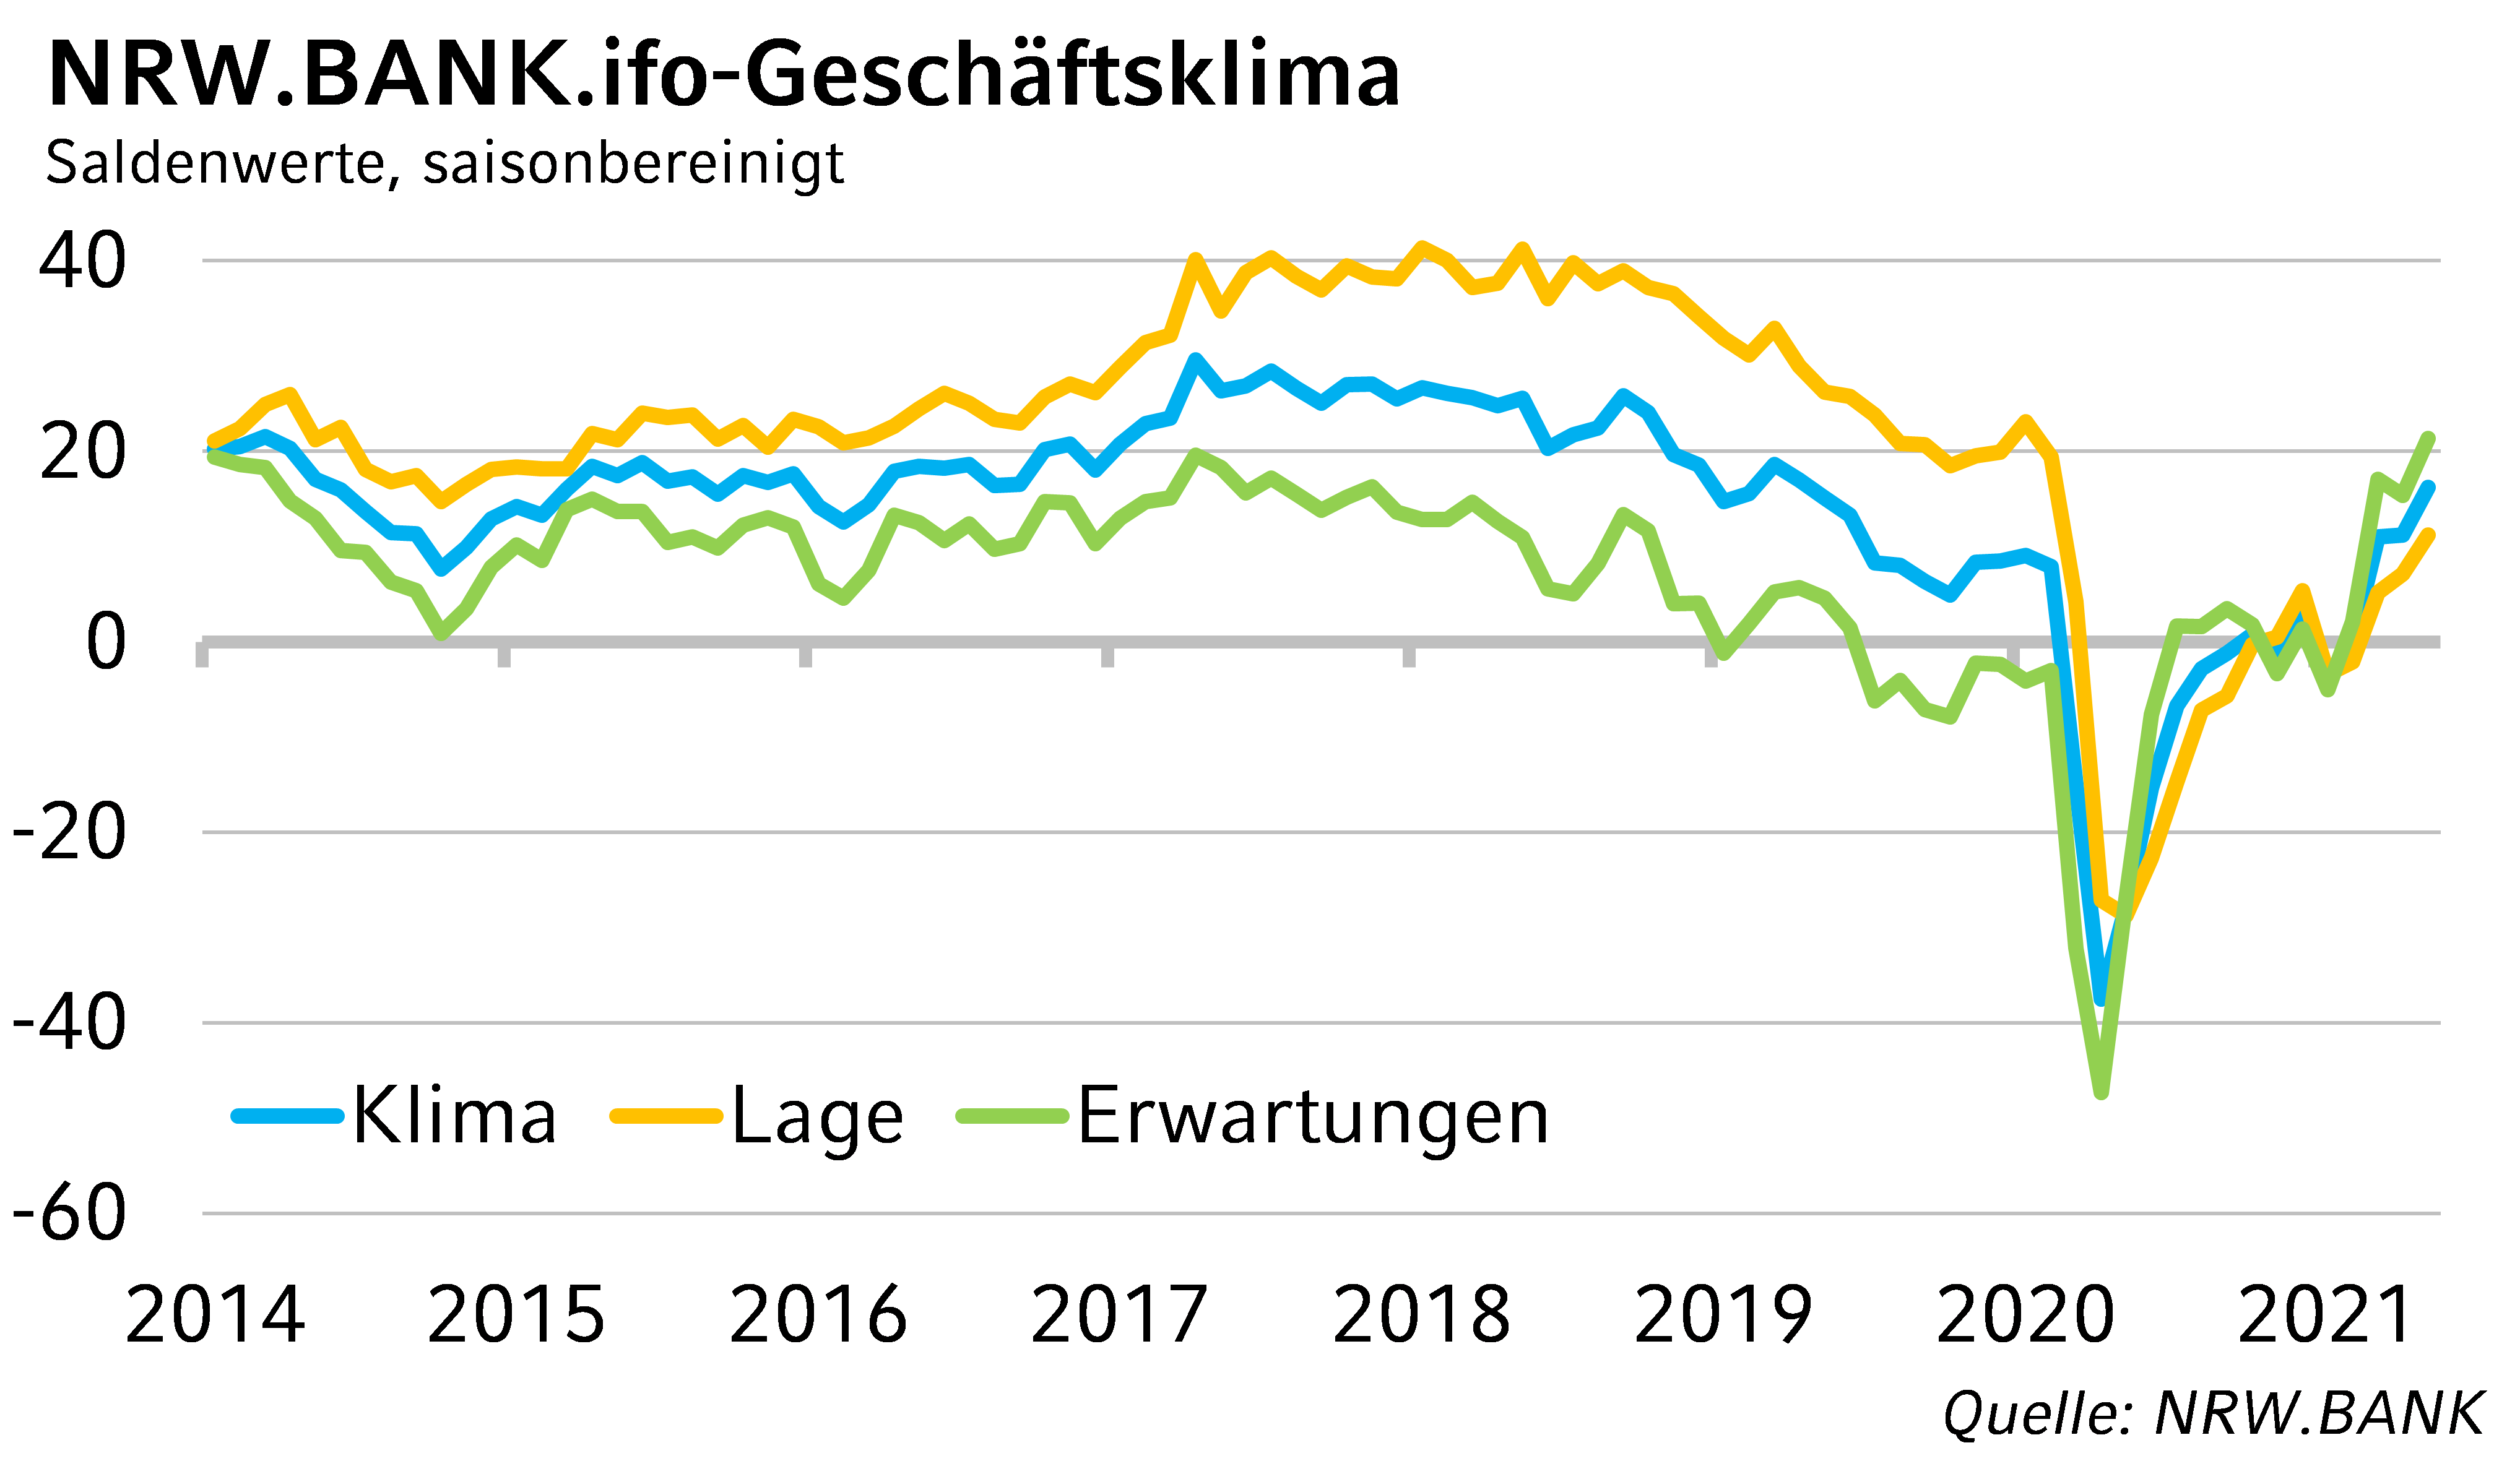 NRW.BANK.ifo-Geschäftsklima Mai 2021: NRW-Wirtschaft steuert auf Boom zu